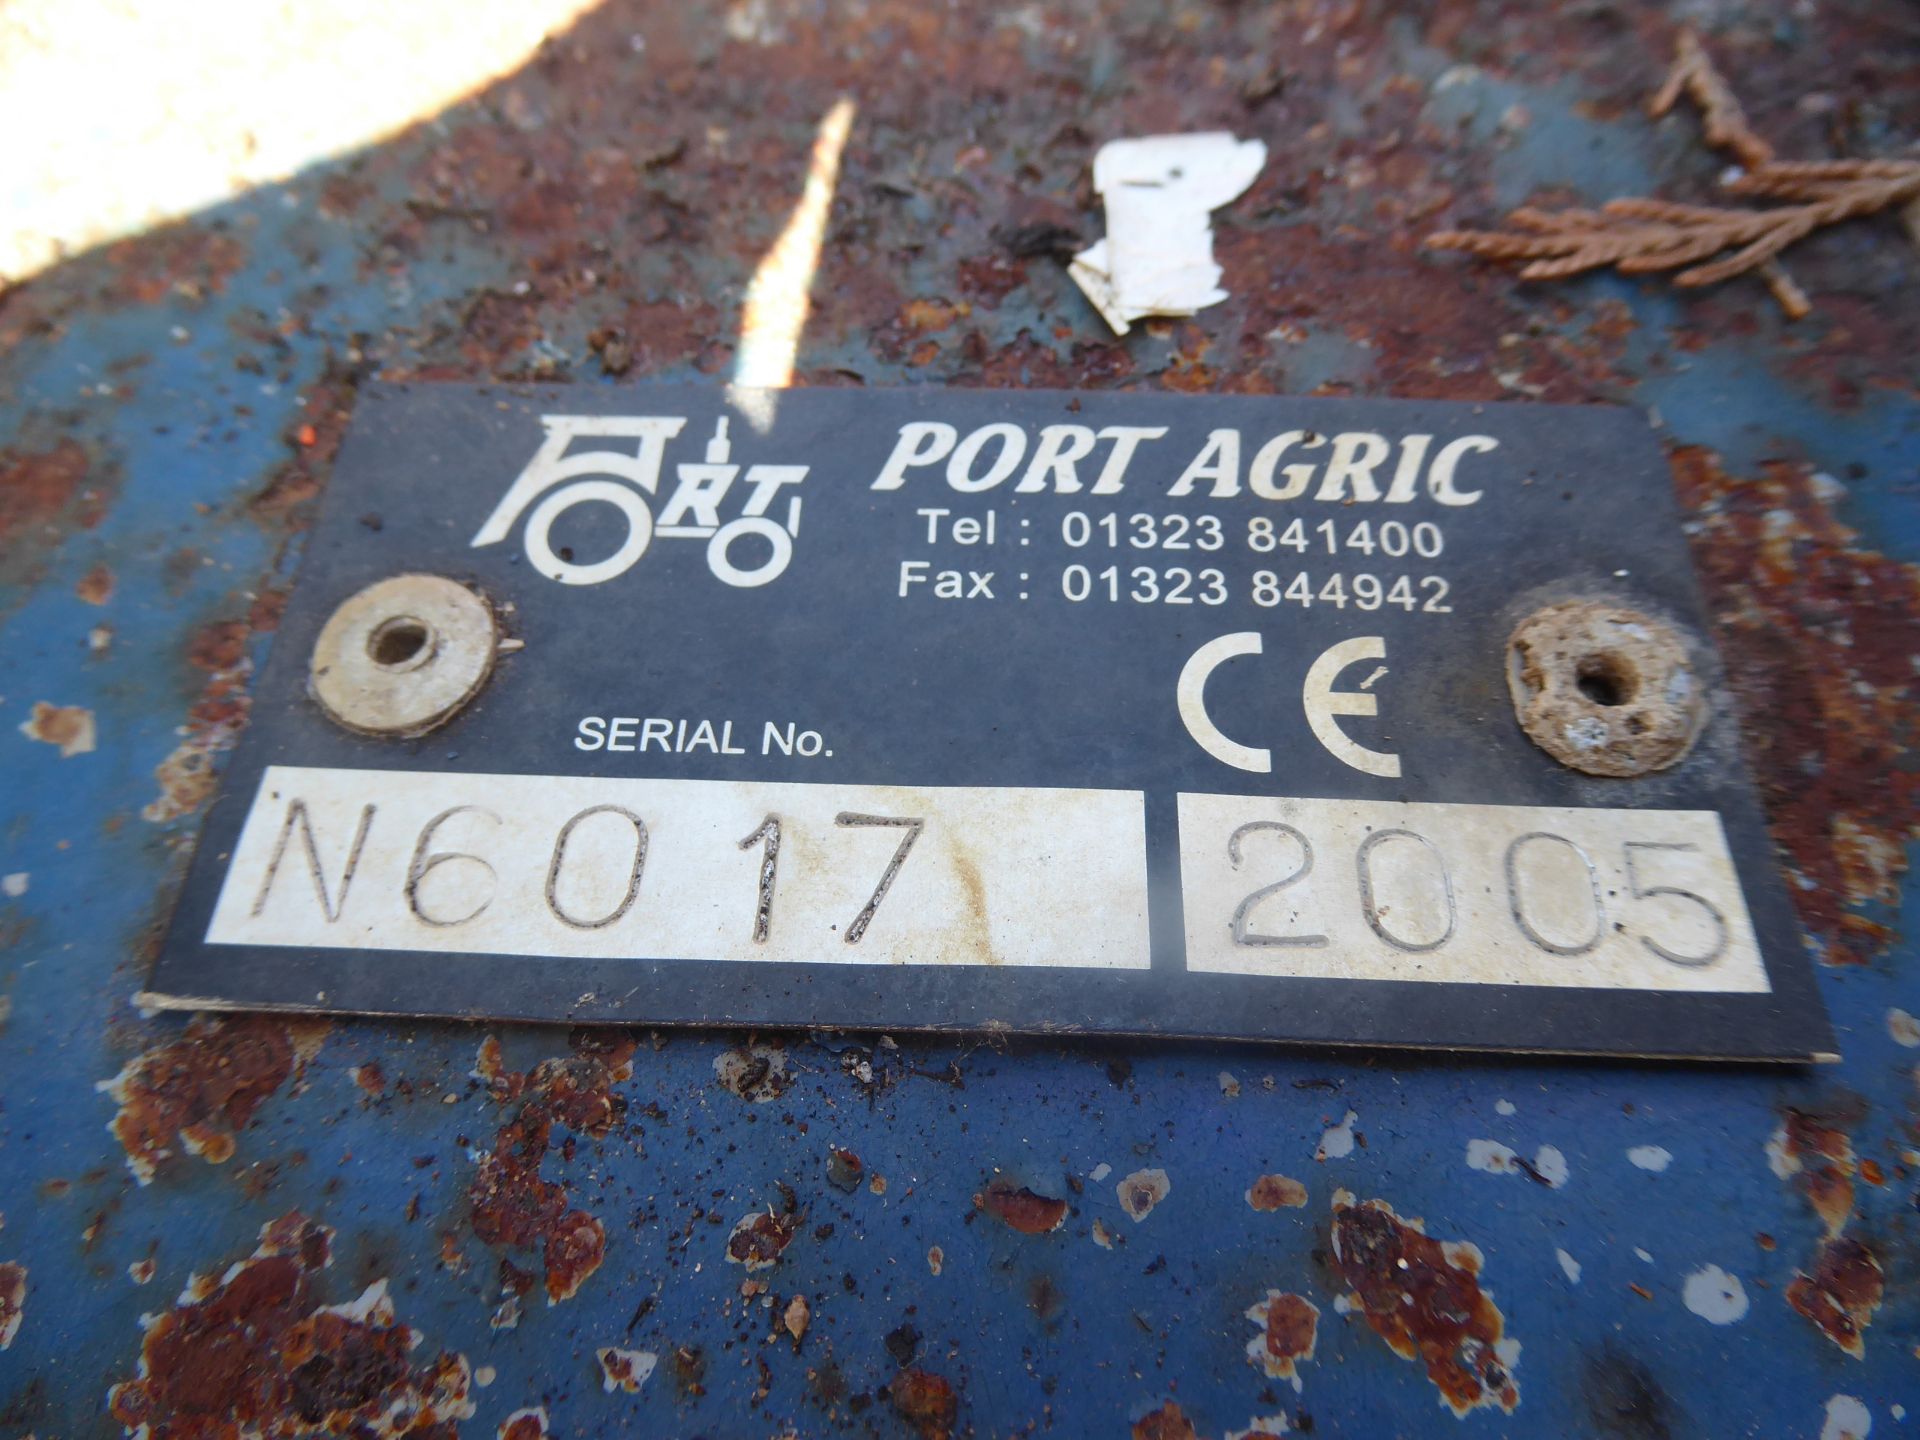 Port Agric 6ft Cutlet Topper - Image 3 of 4